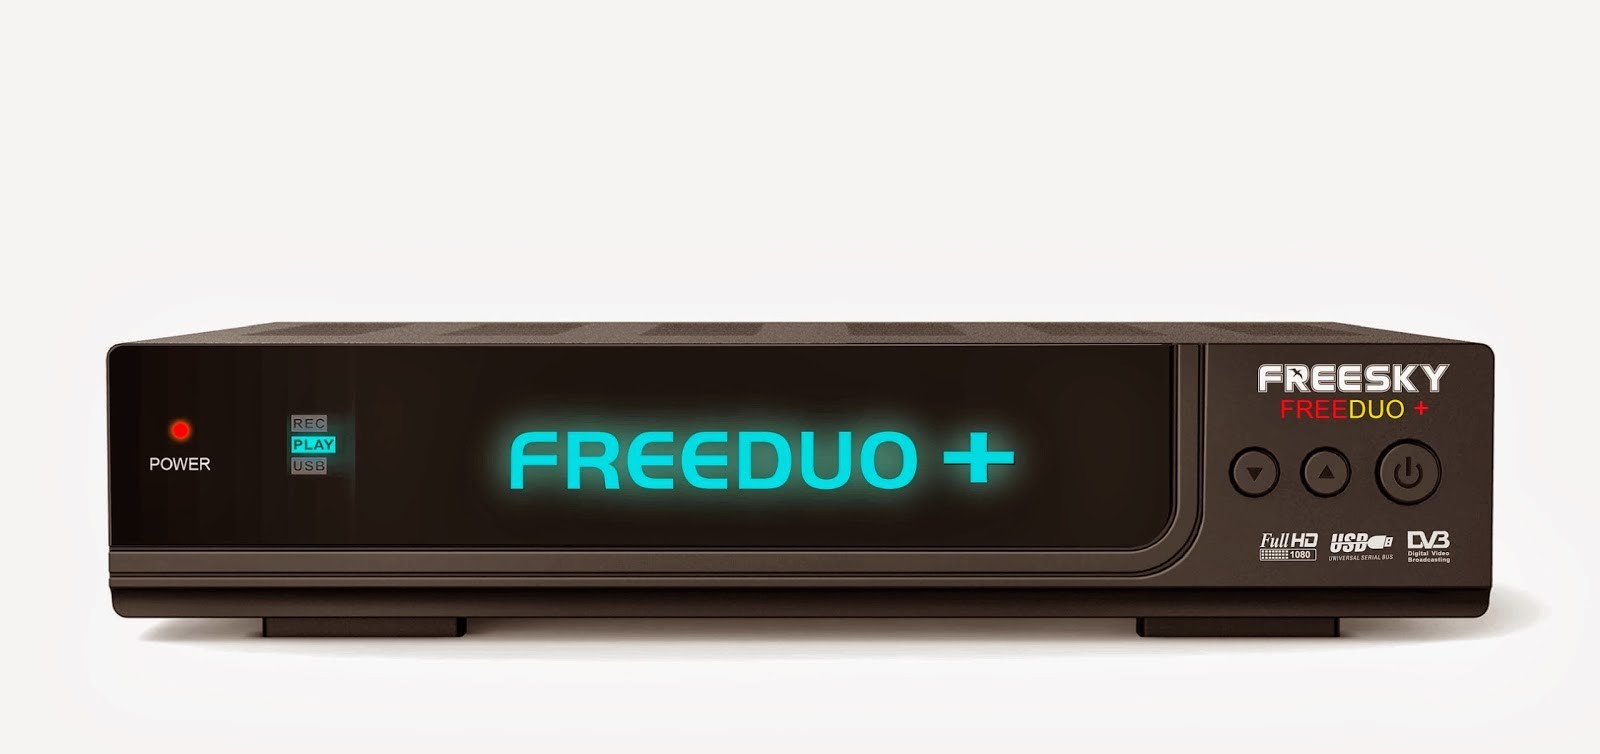 Freesky Freeduo Hd Plus